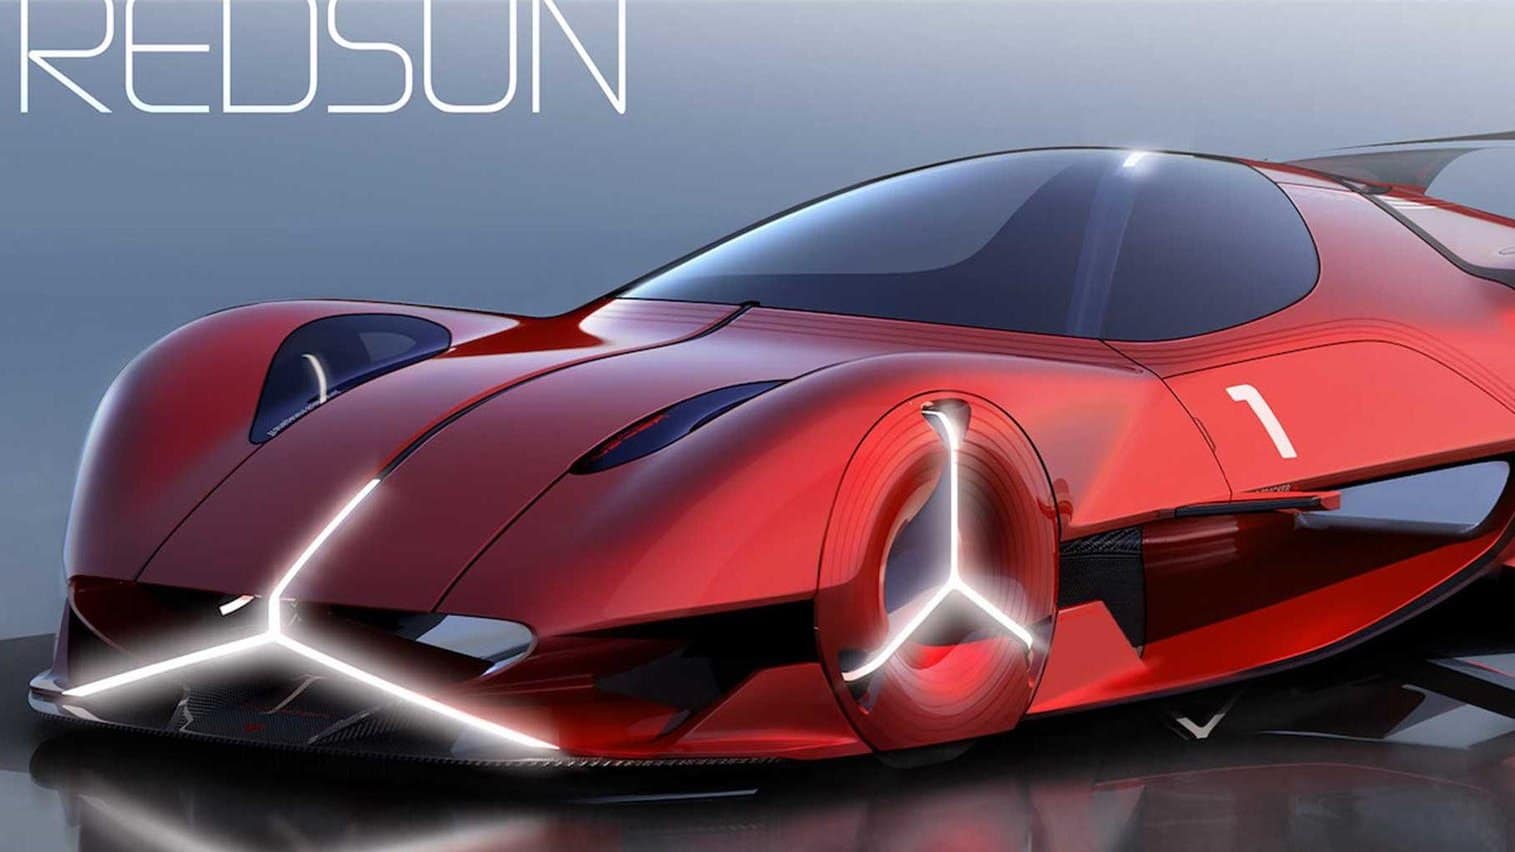 Solar Supercar Concept Mercedes Redsun